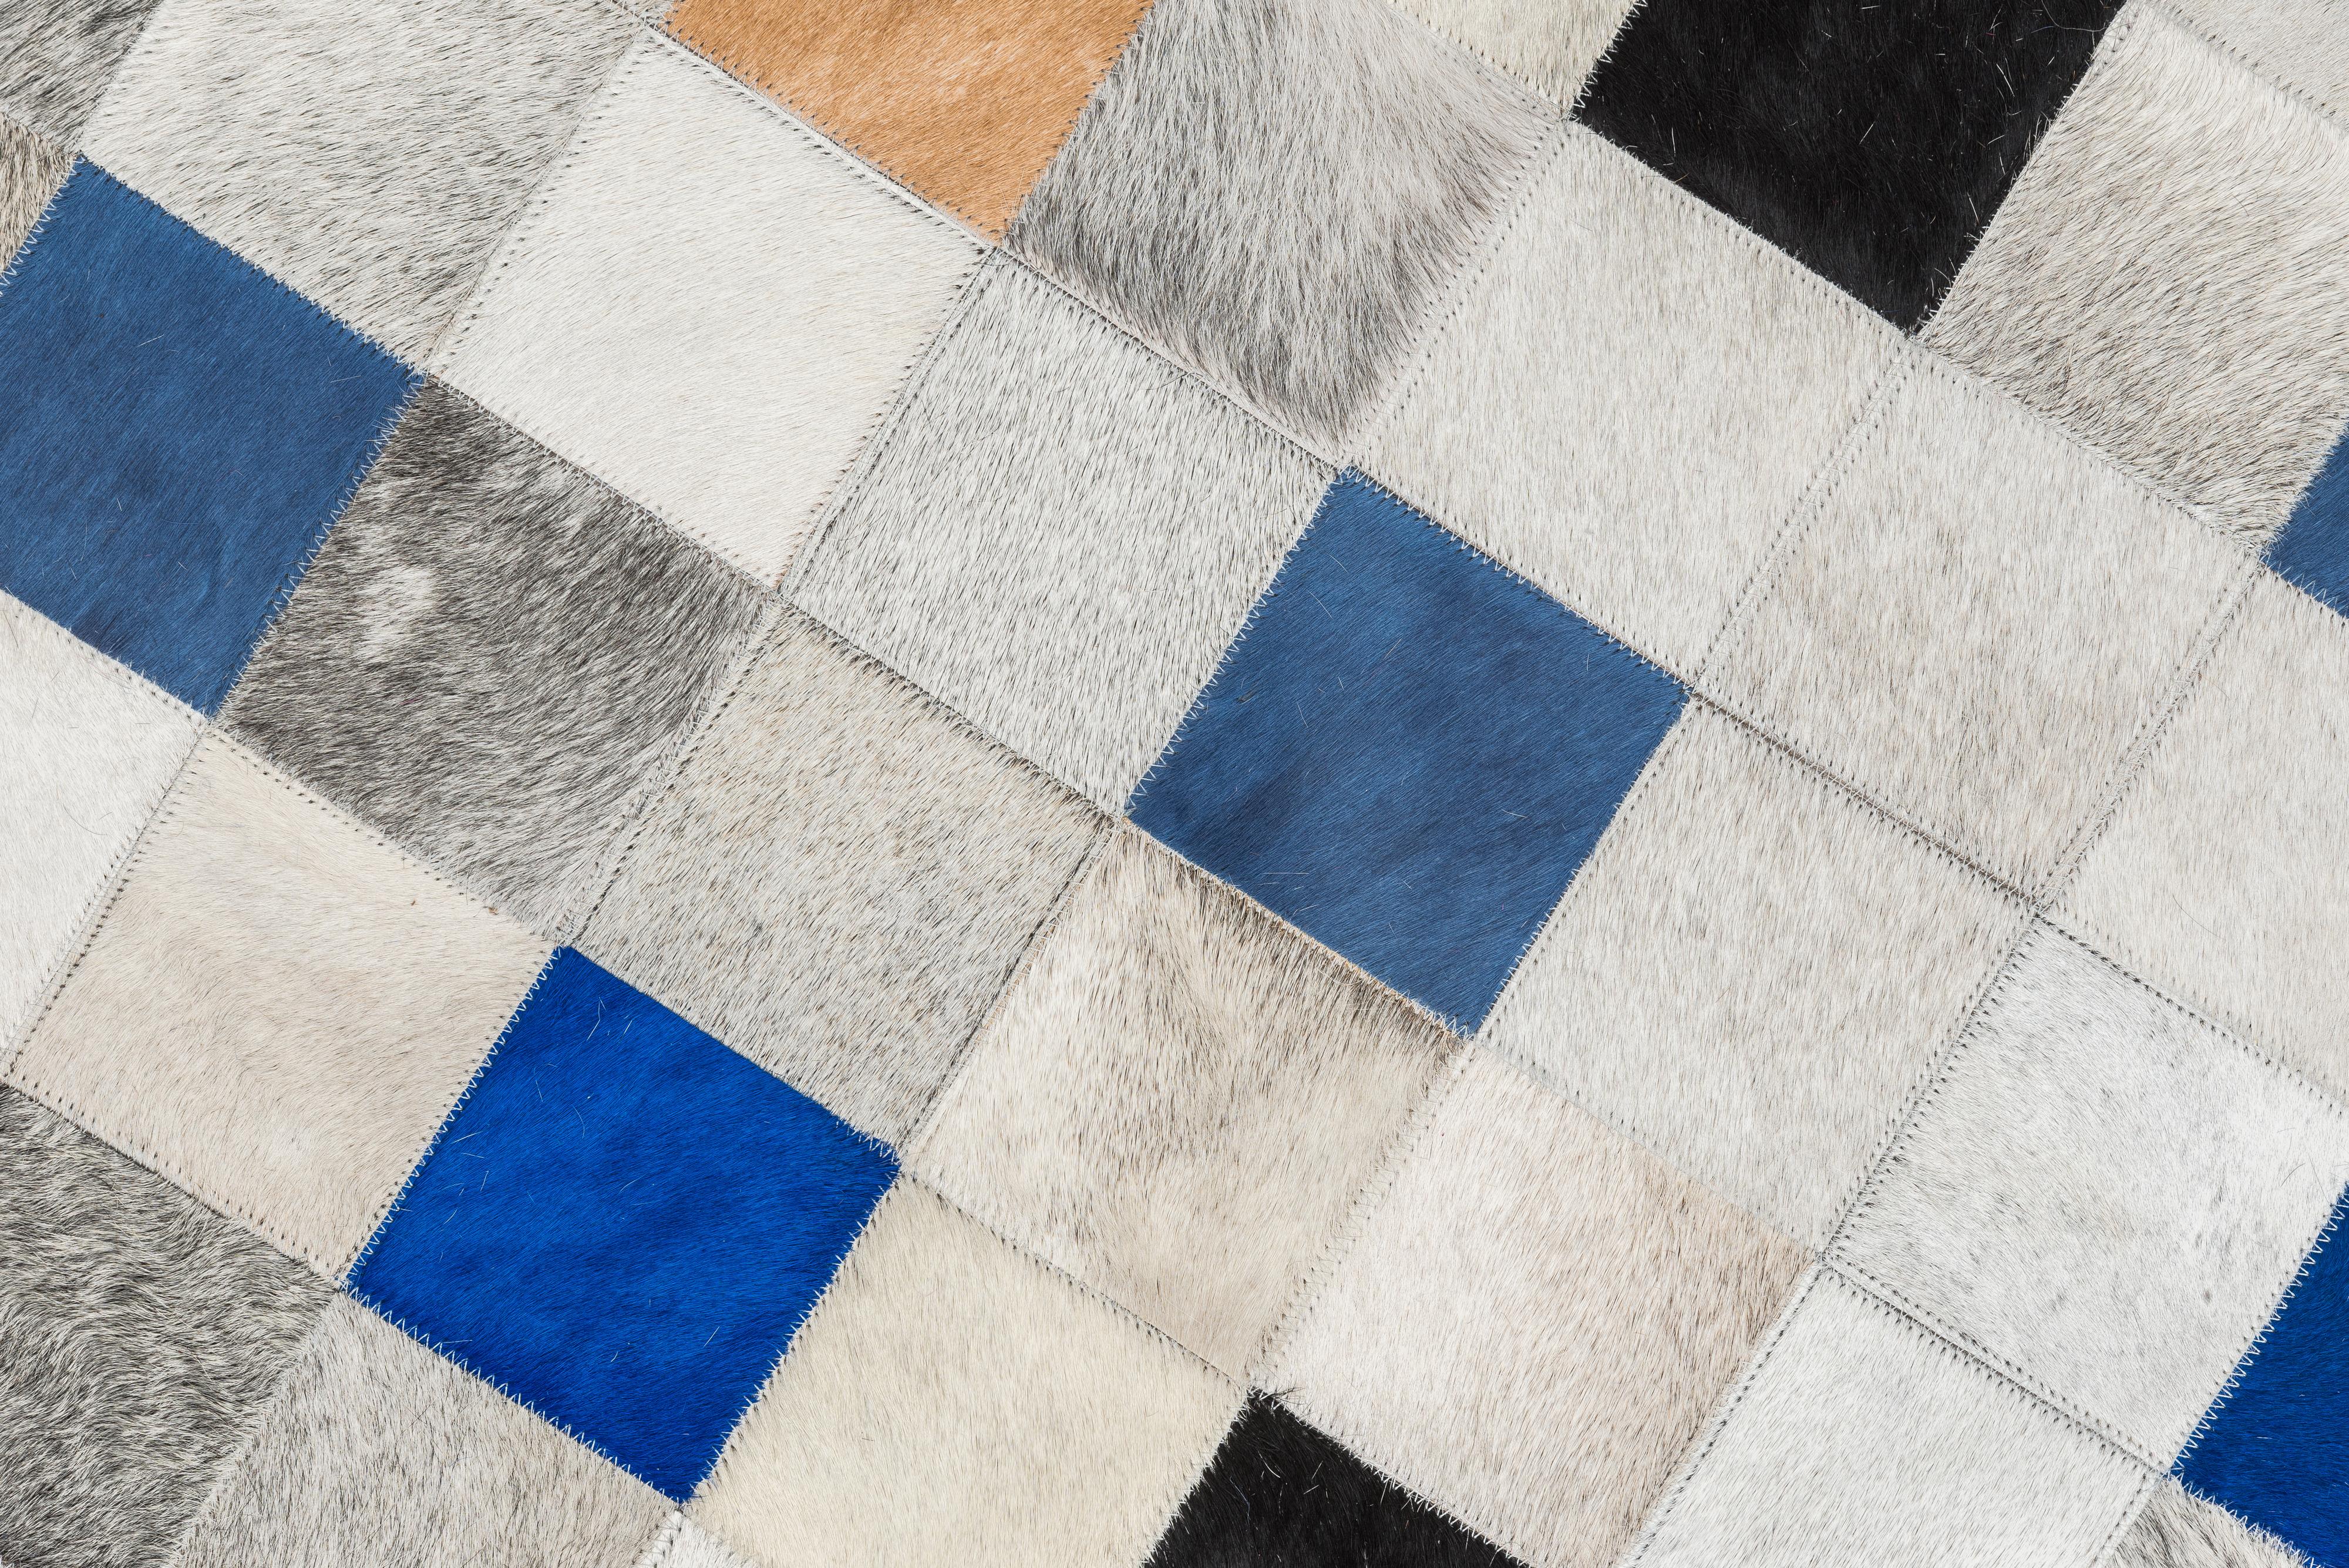 Der Teppich Falling Squares ist eine verspielte, aber dennoch auffällige Neuerscheinung unserer Alta-Linie, die Ihrem Interieur eine Menge Charisma und Raffinesse verleiht. Die blaue Farbgebung wird mit natürlichen Grautönen kombiniert, um eine